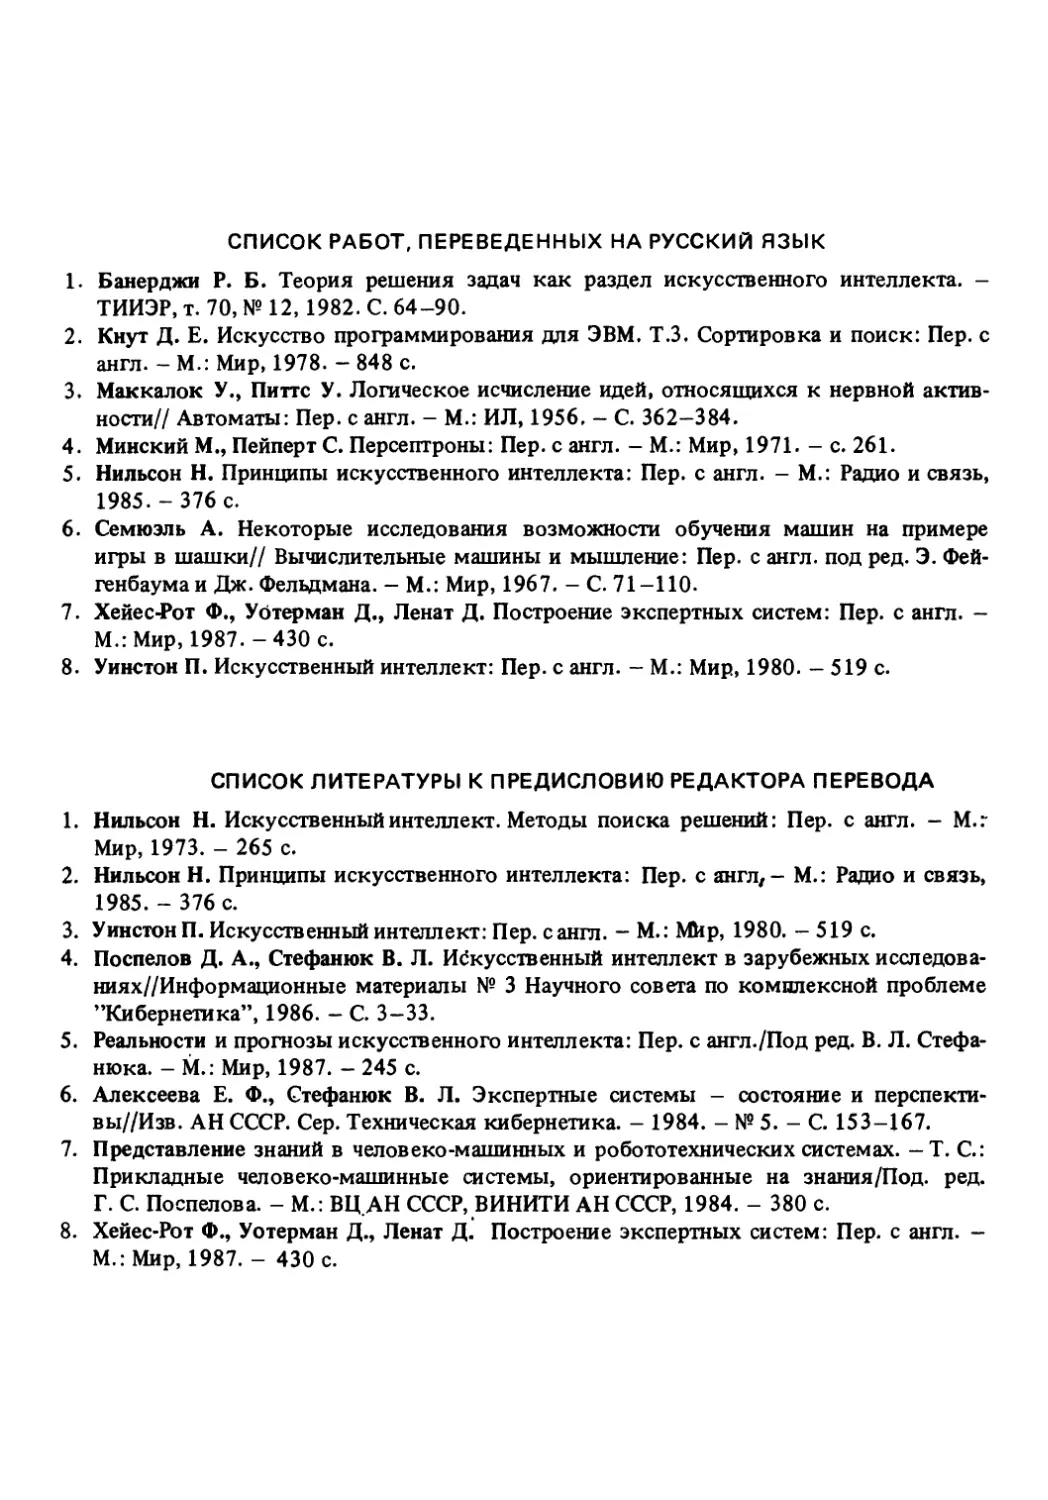 Список работ, переведенных на русский язык
Список литературы к предисловию редактора перевода